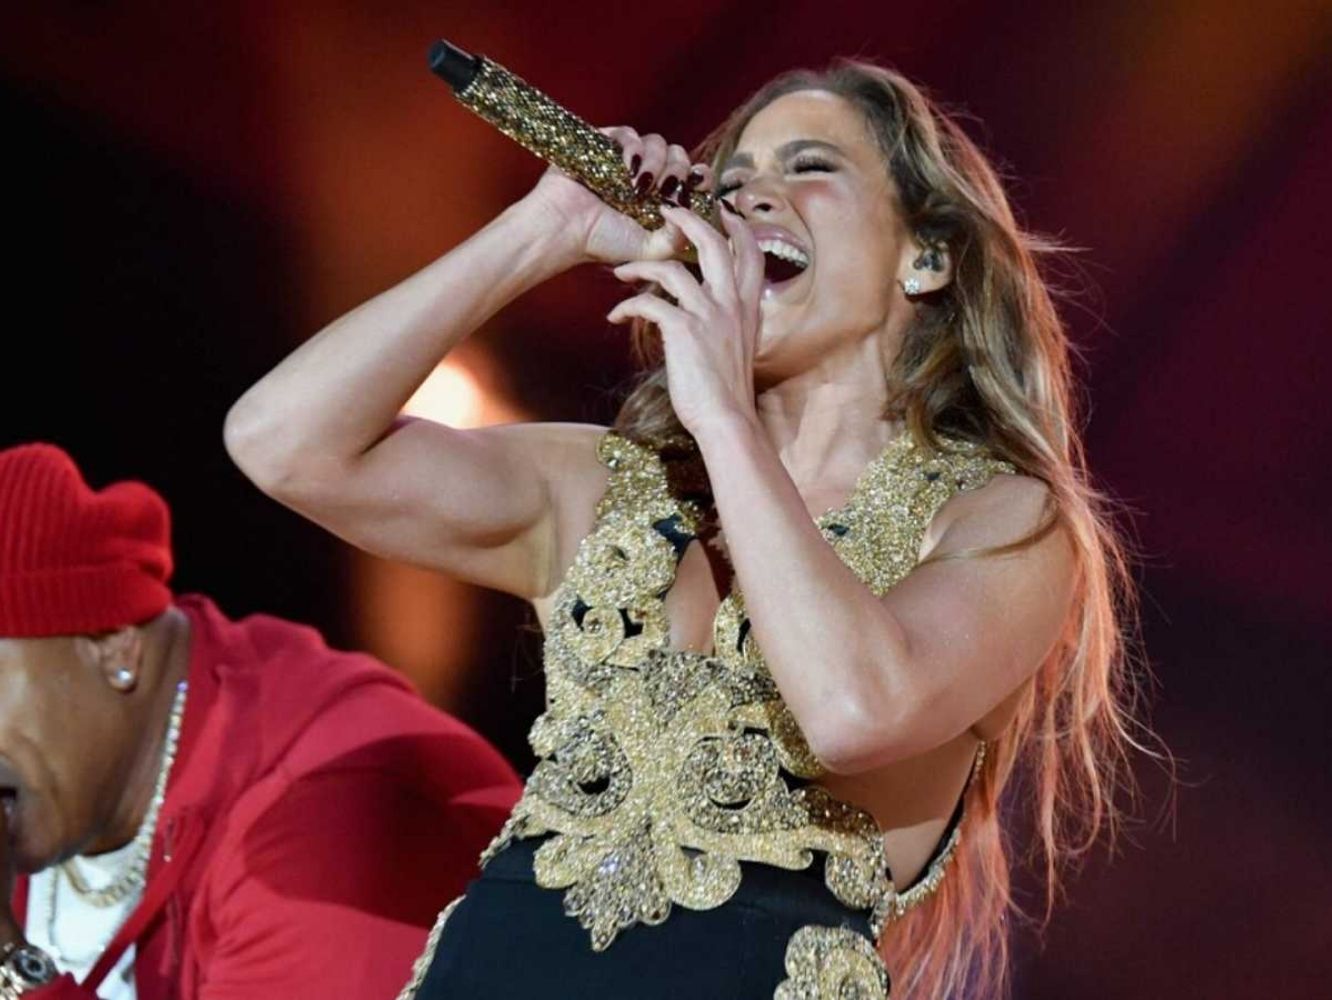  Jennifer Lopez vuelve a viralizarse por su espantoso directo: así sonó ‘All I Have’ en Nueva York